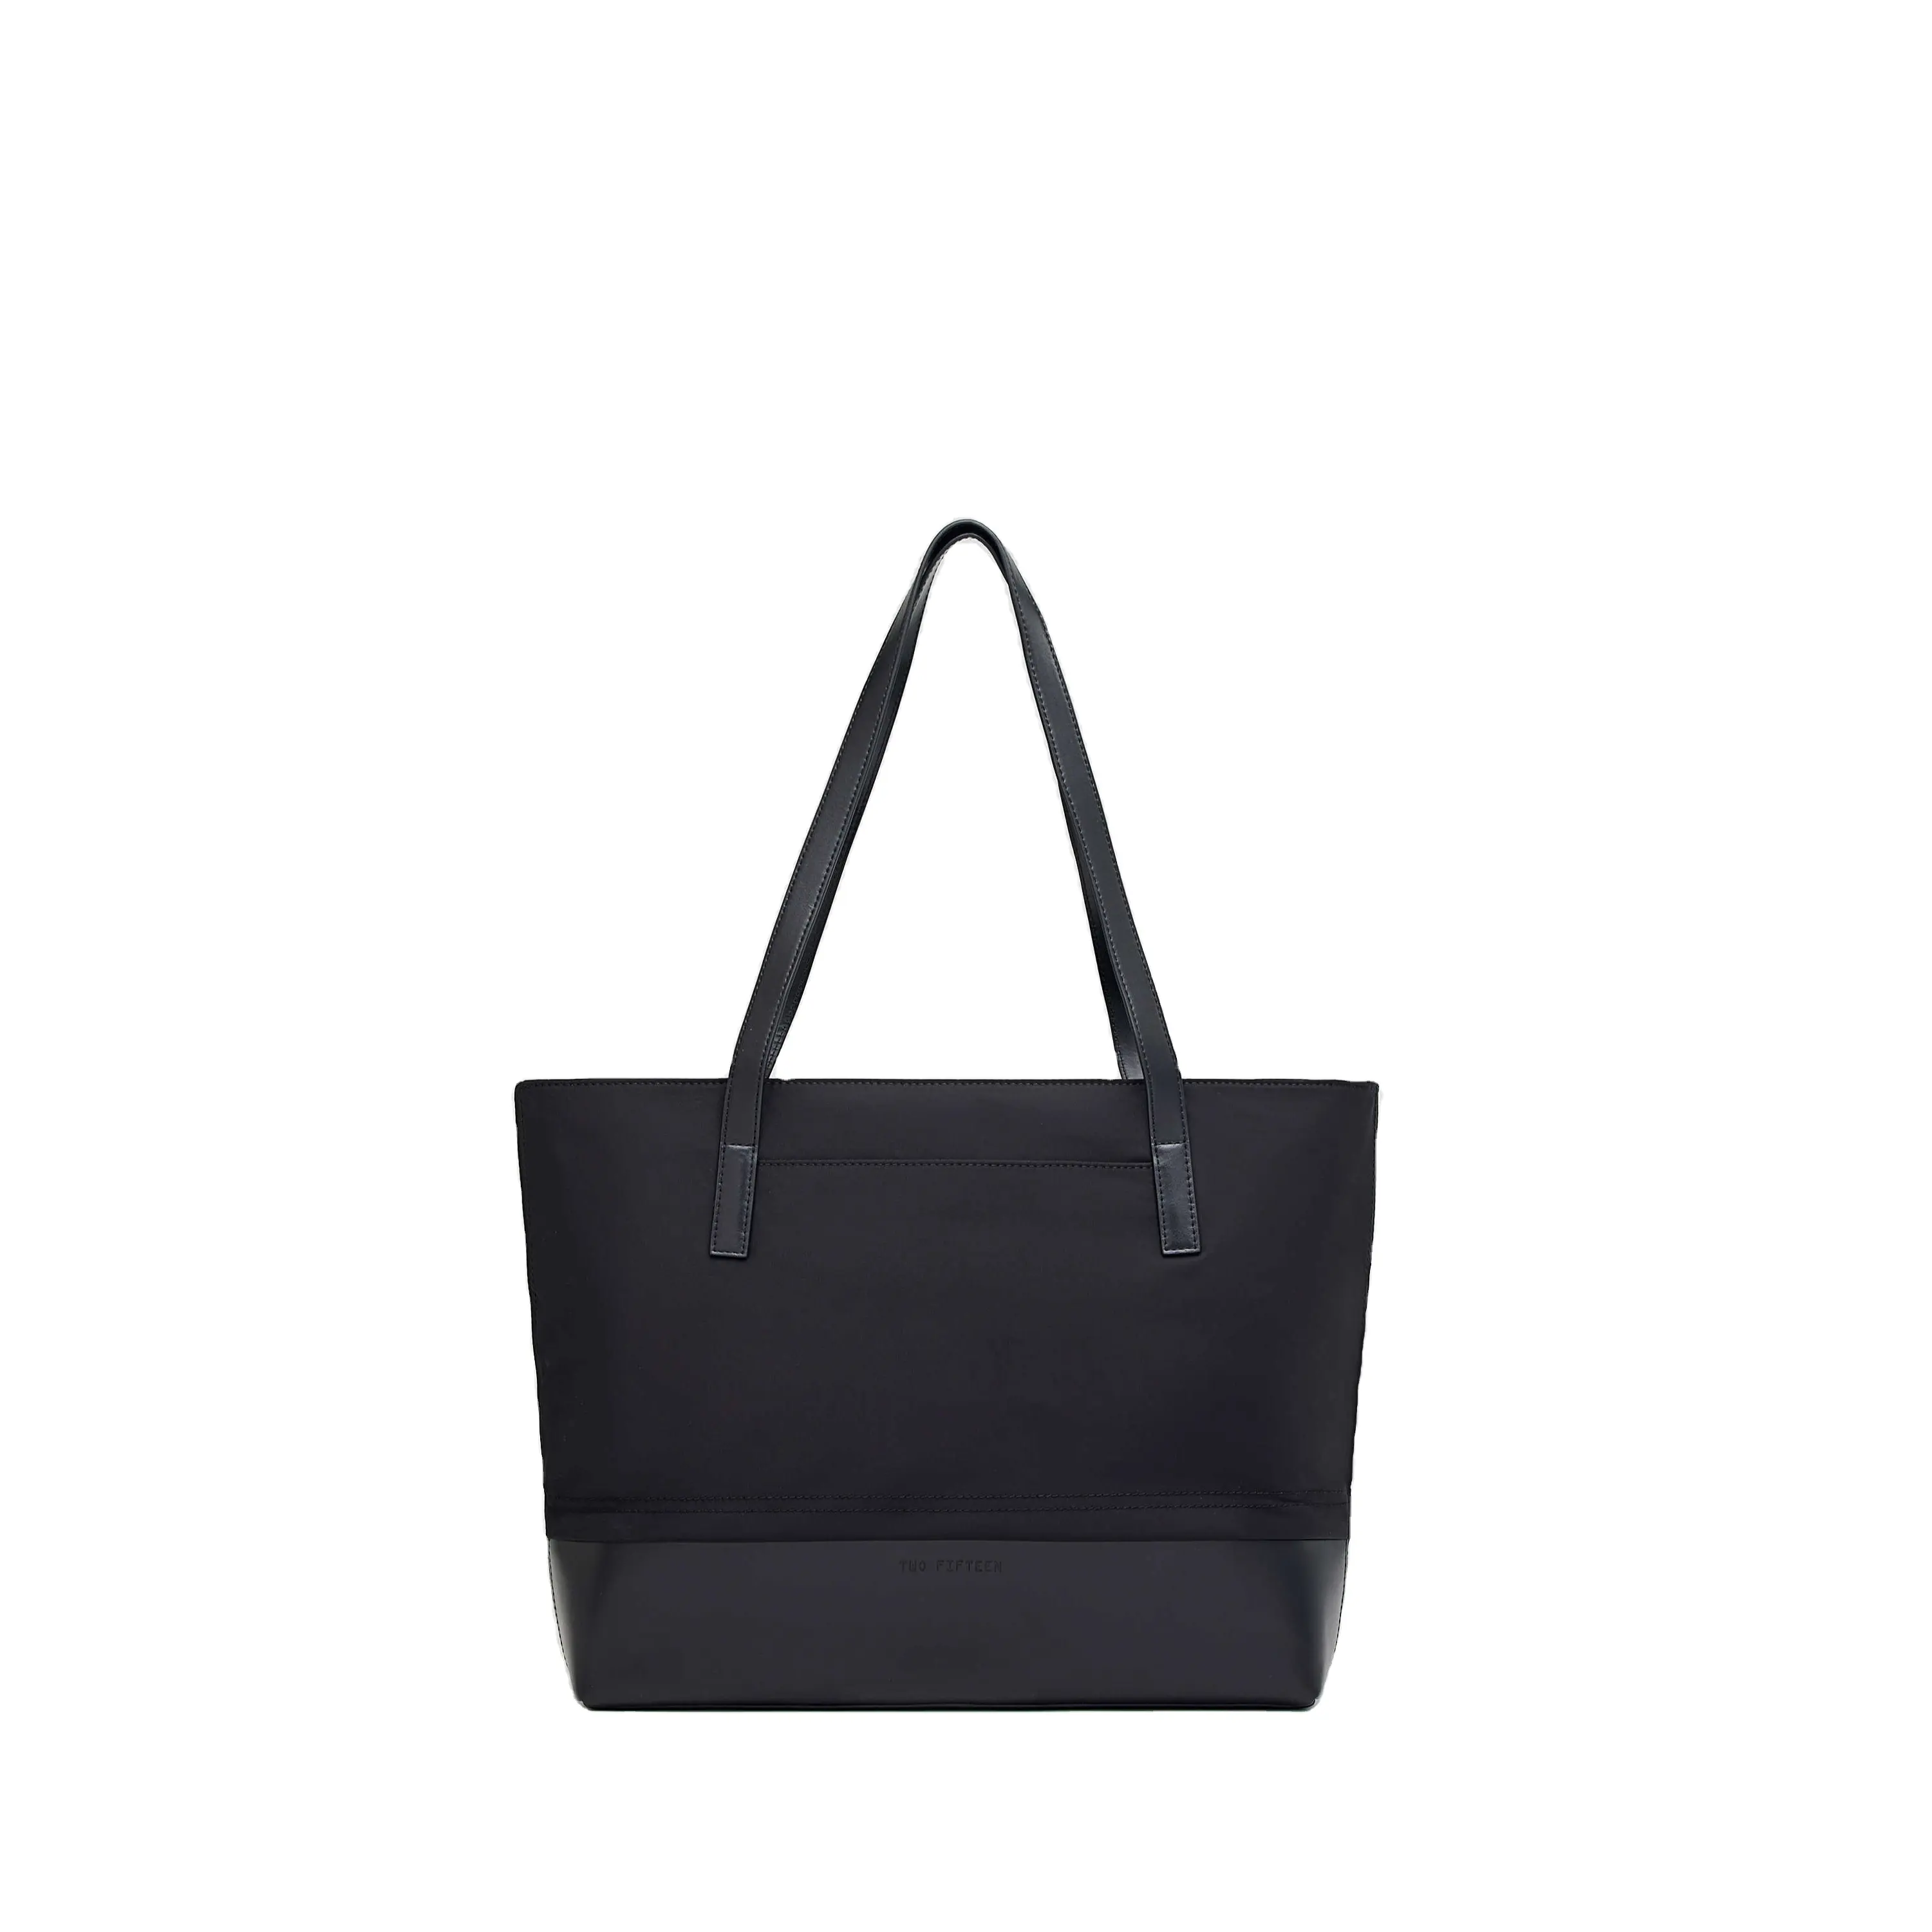 Yeni varış moda deri Tote çanta özel bayanlar Casual fermuar büyük kapasiteli çanta